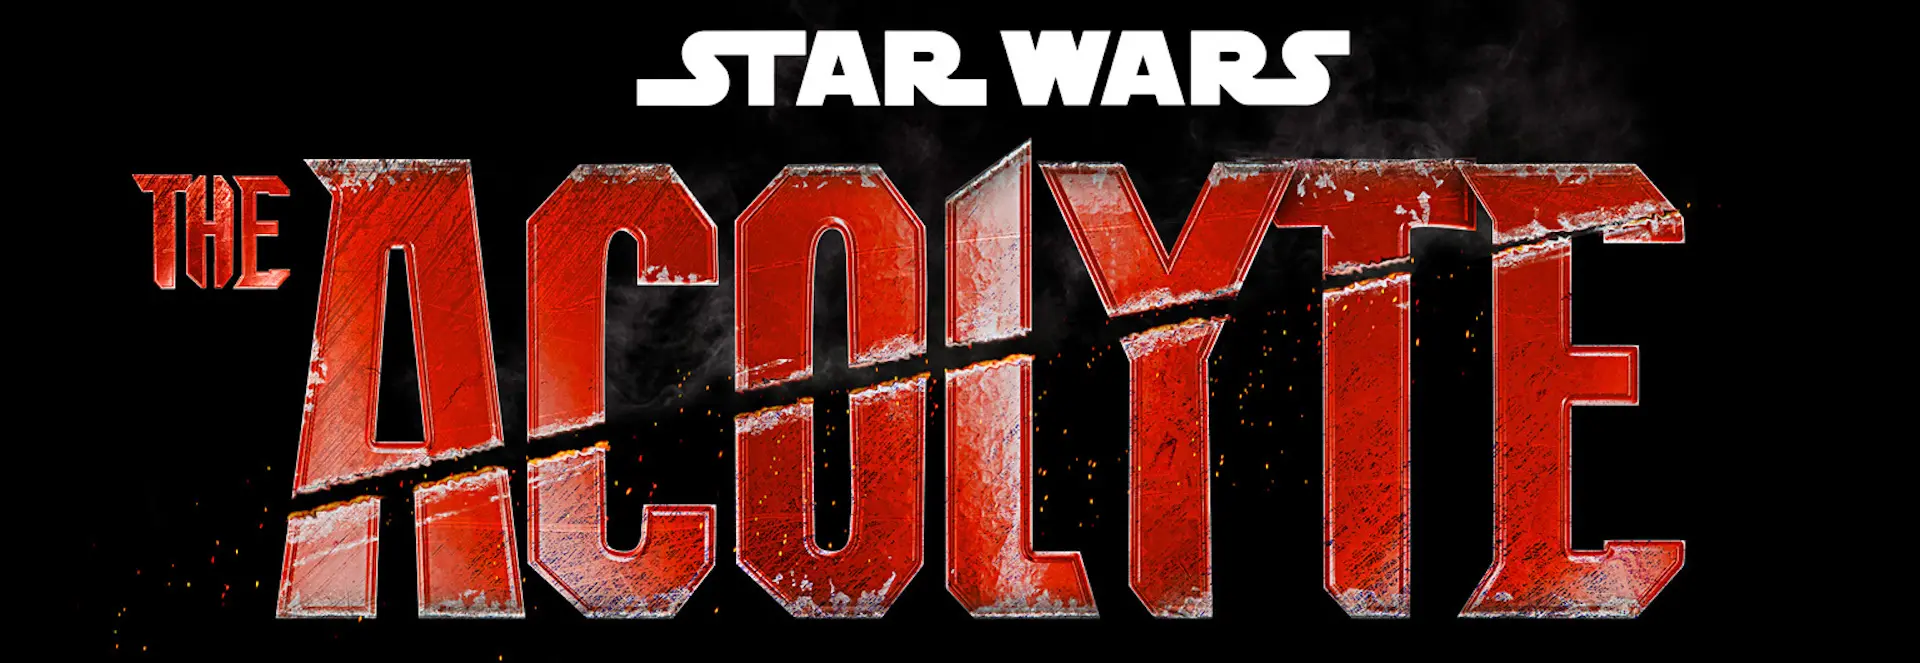 Disney Plus confirmó el elenco de The Acolyte, la nueva serie Star Wars